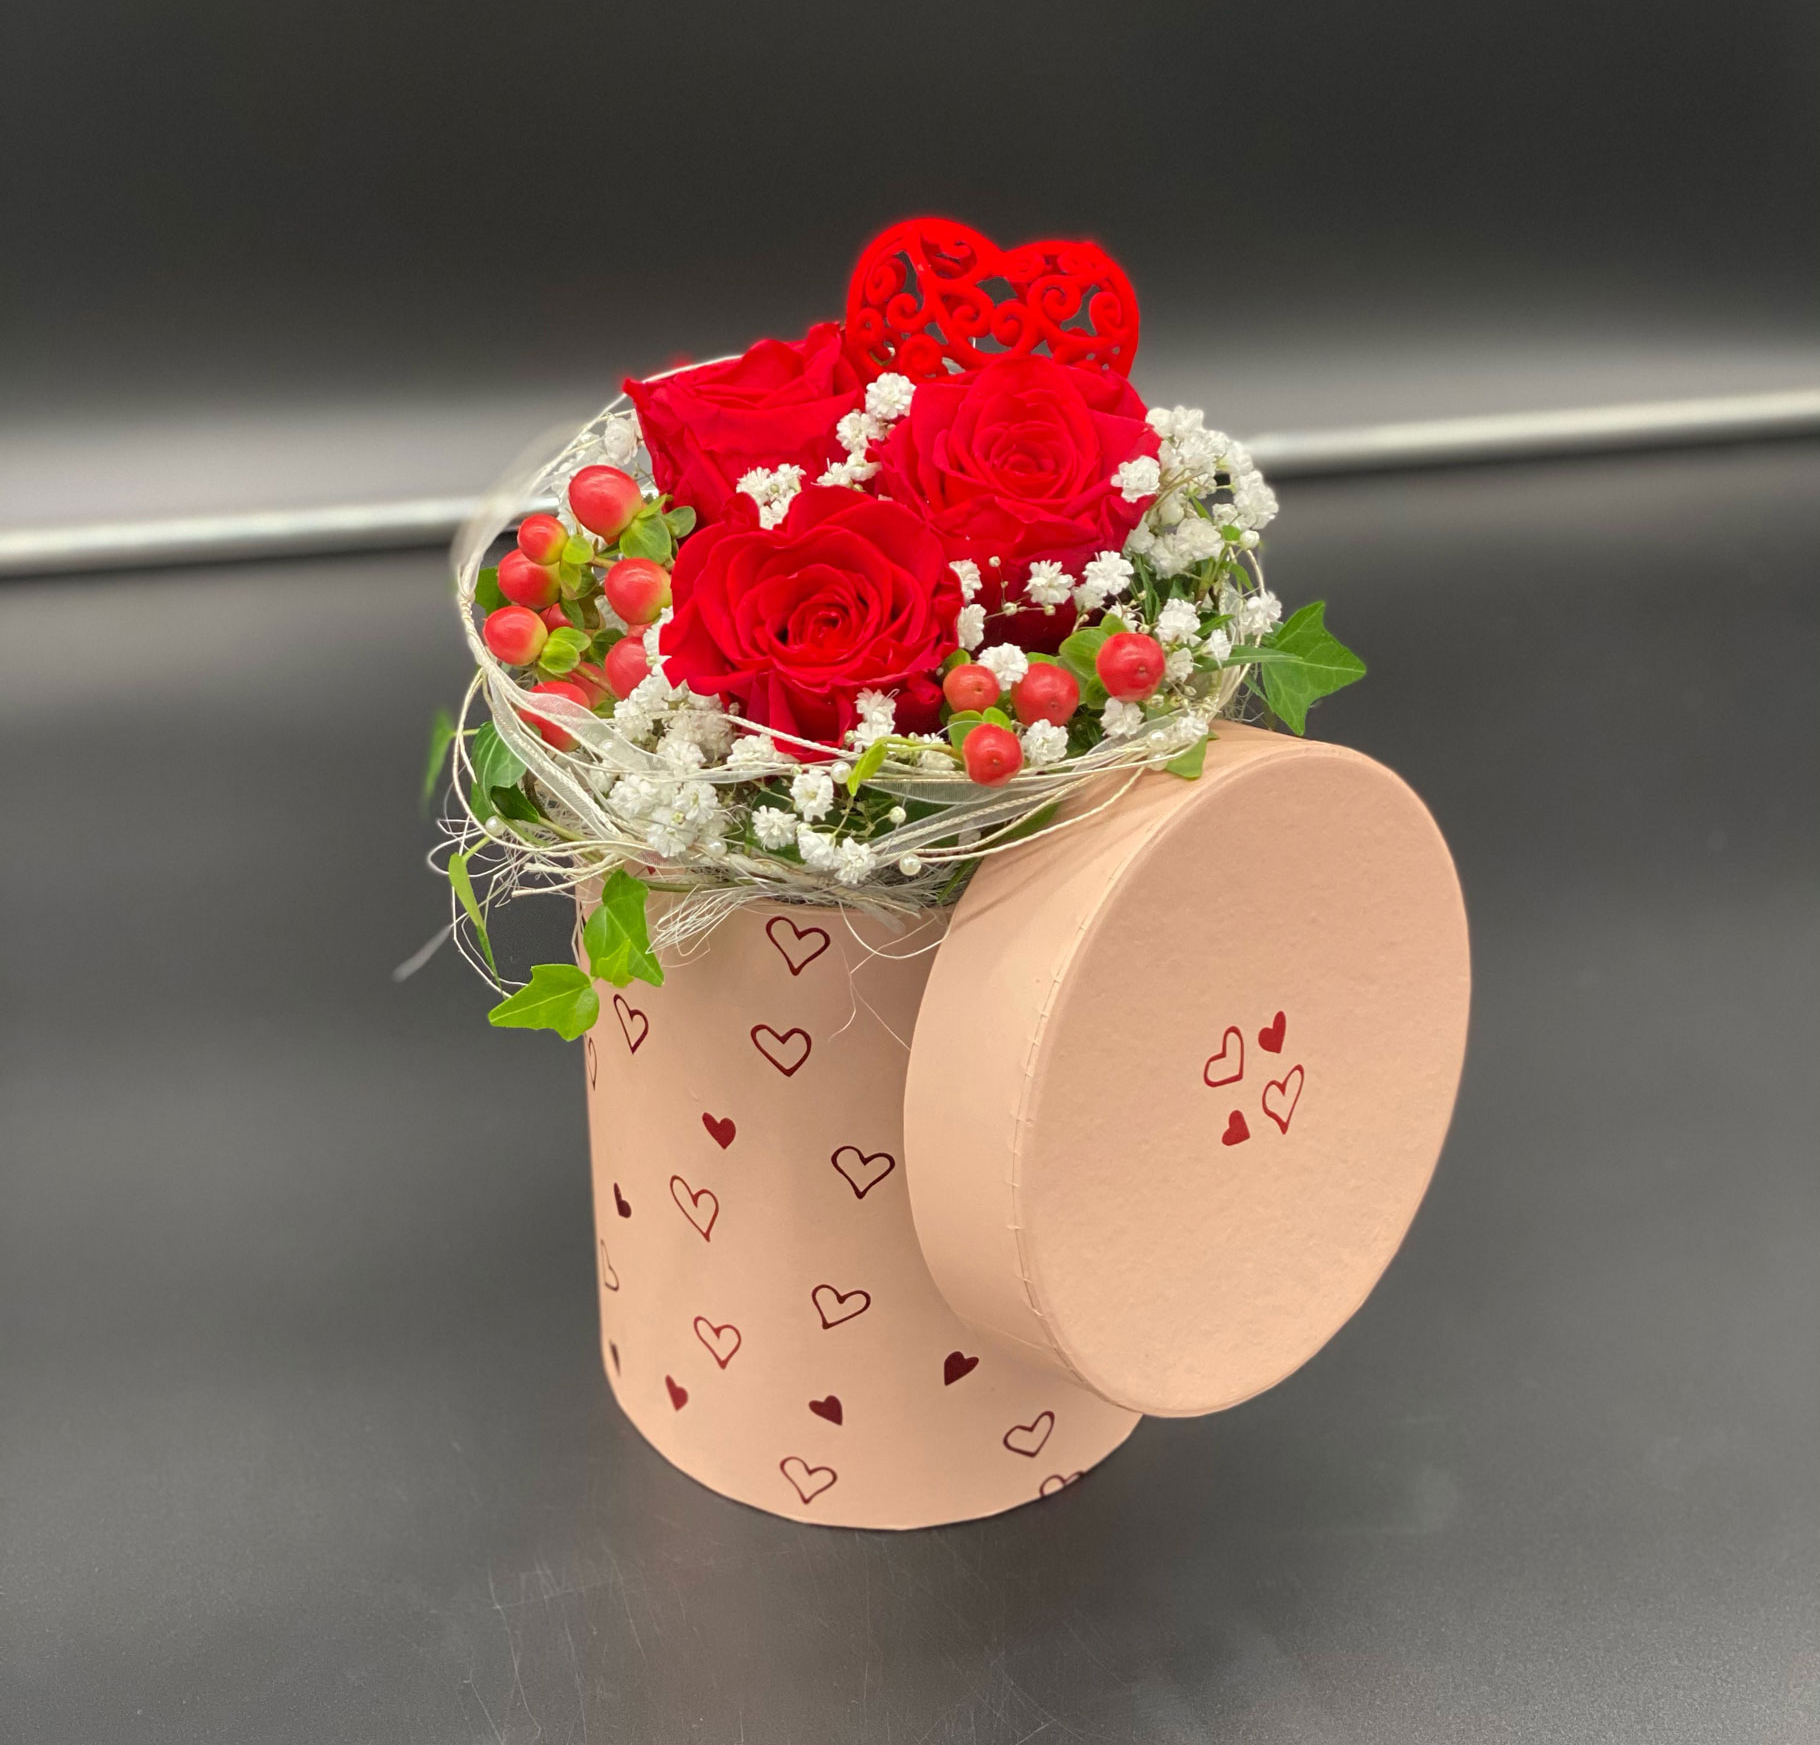 Ein Gruß von Herzen - Verdissimo Rosen Rot (schockgefrorene Rosen mit einer Mindesthaltbarkeit von 1 Jahr)